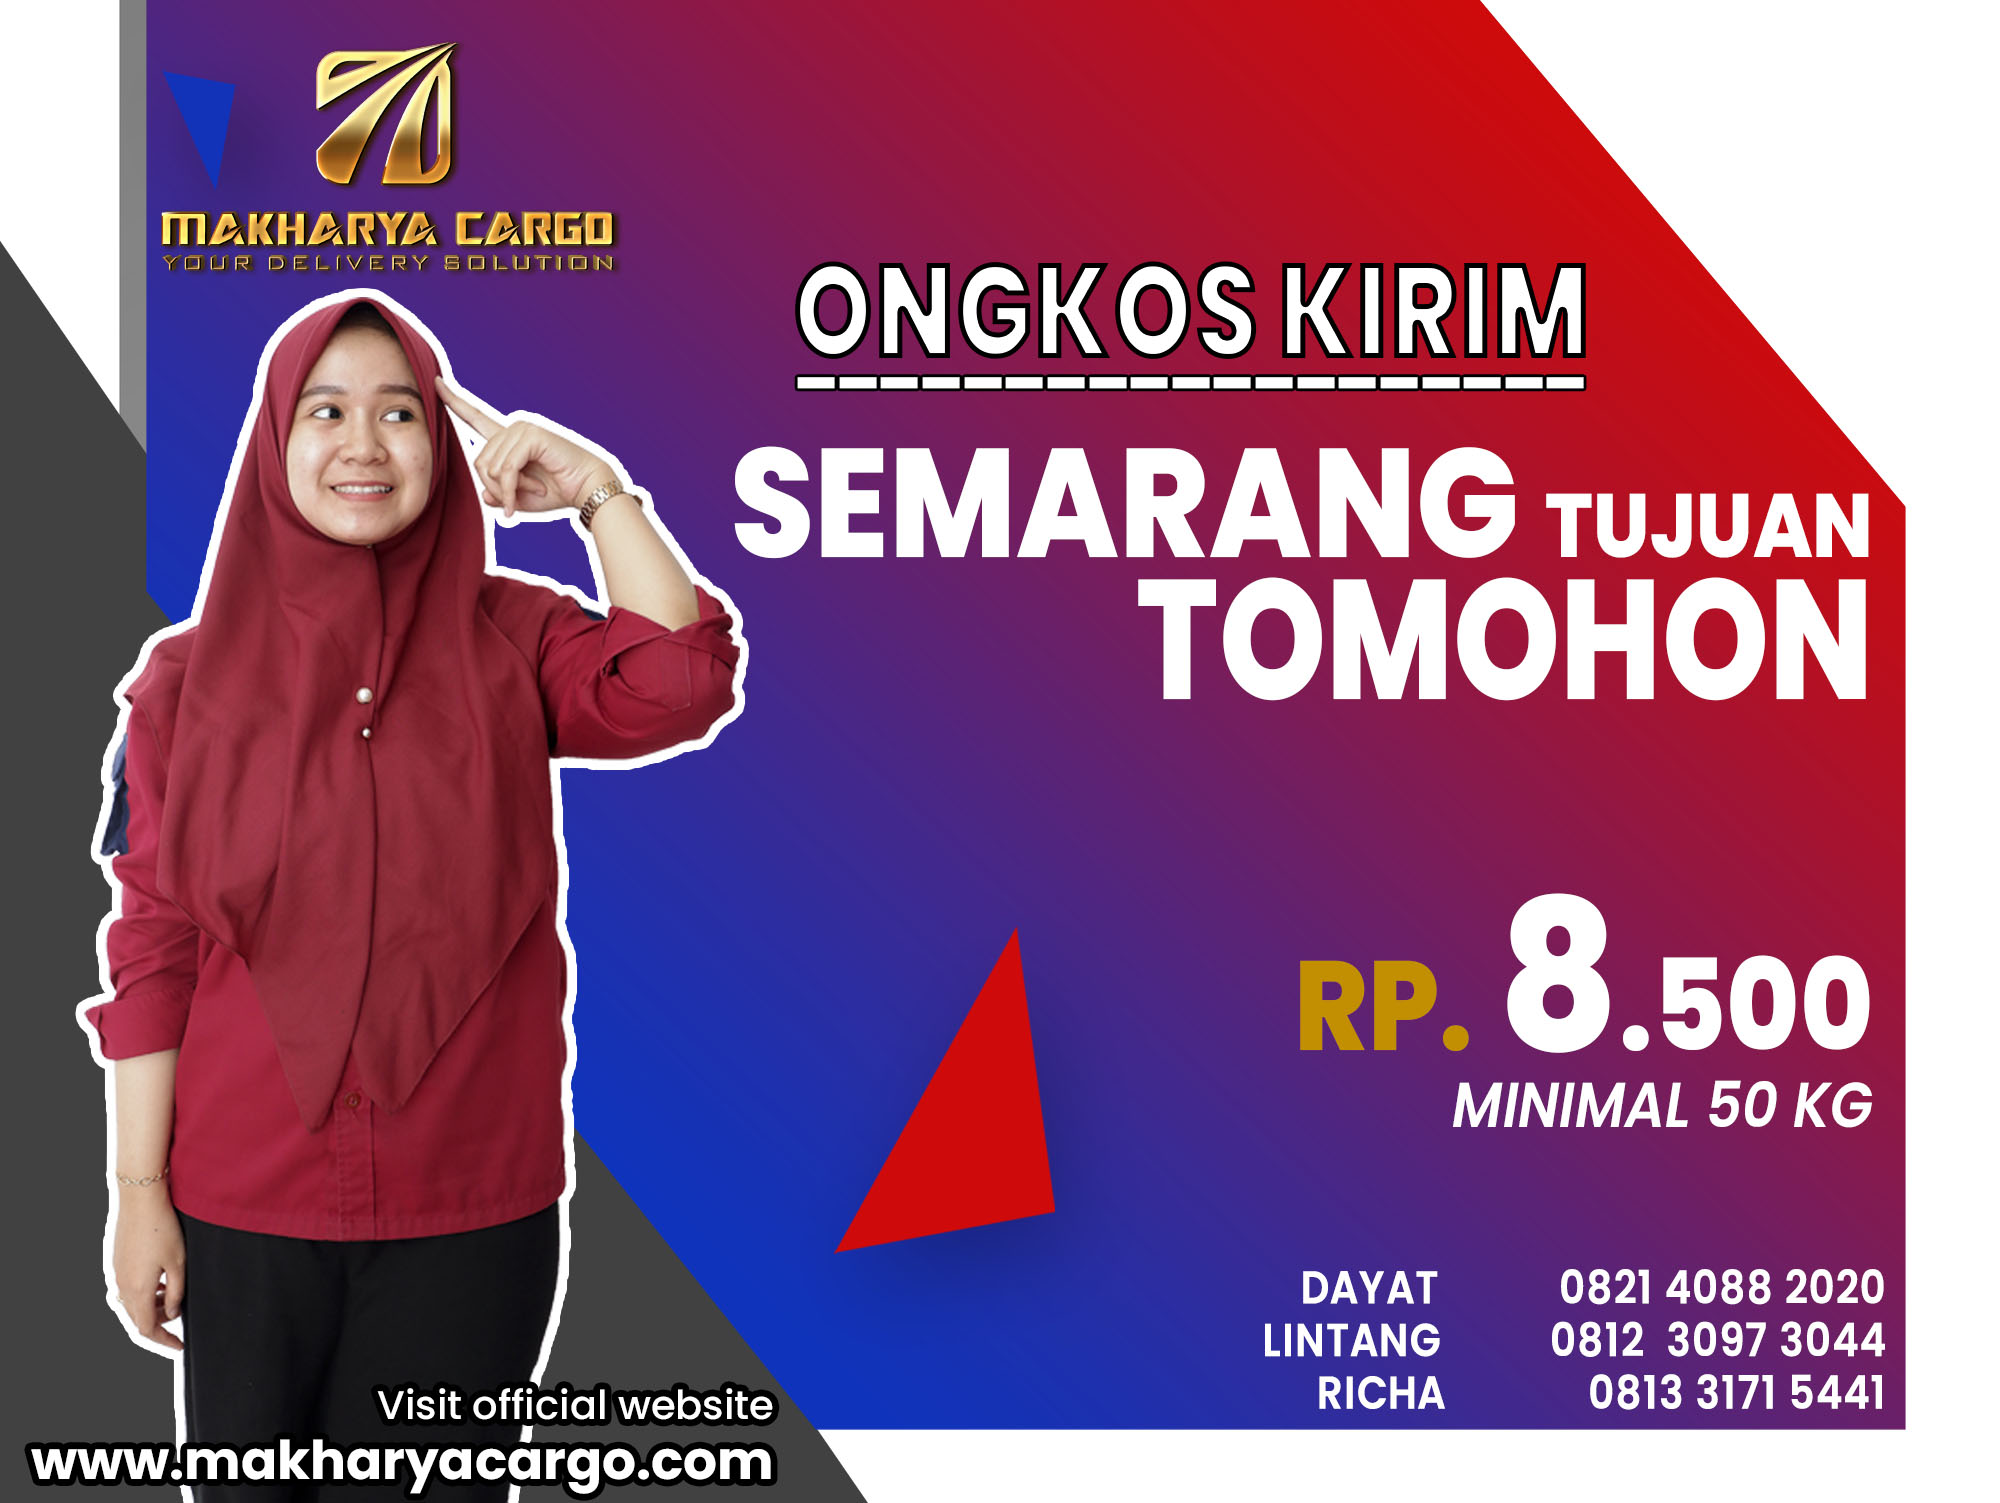 Ongkos Kirim Semarang Tomohon